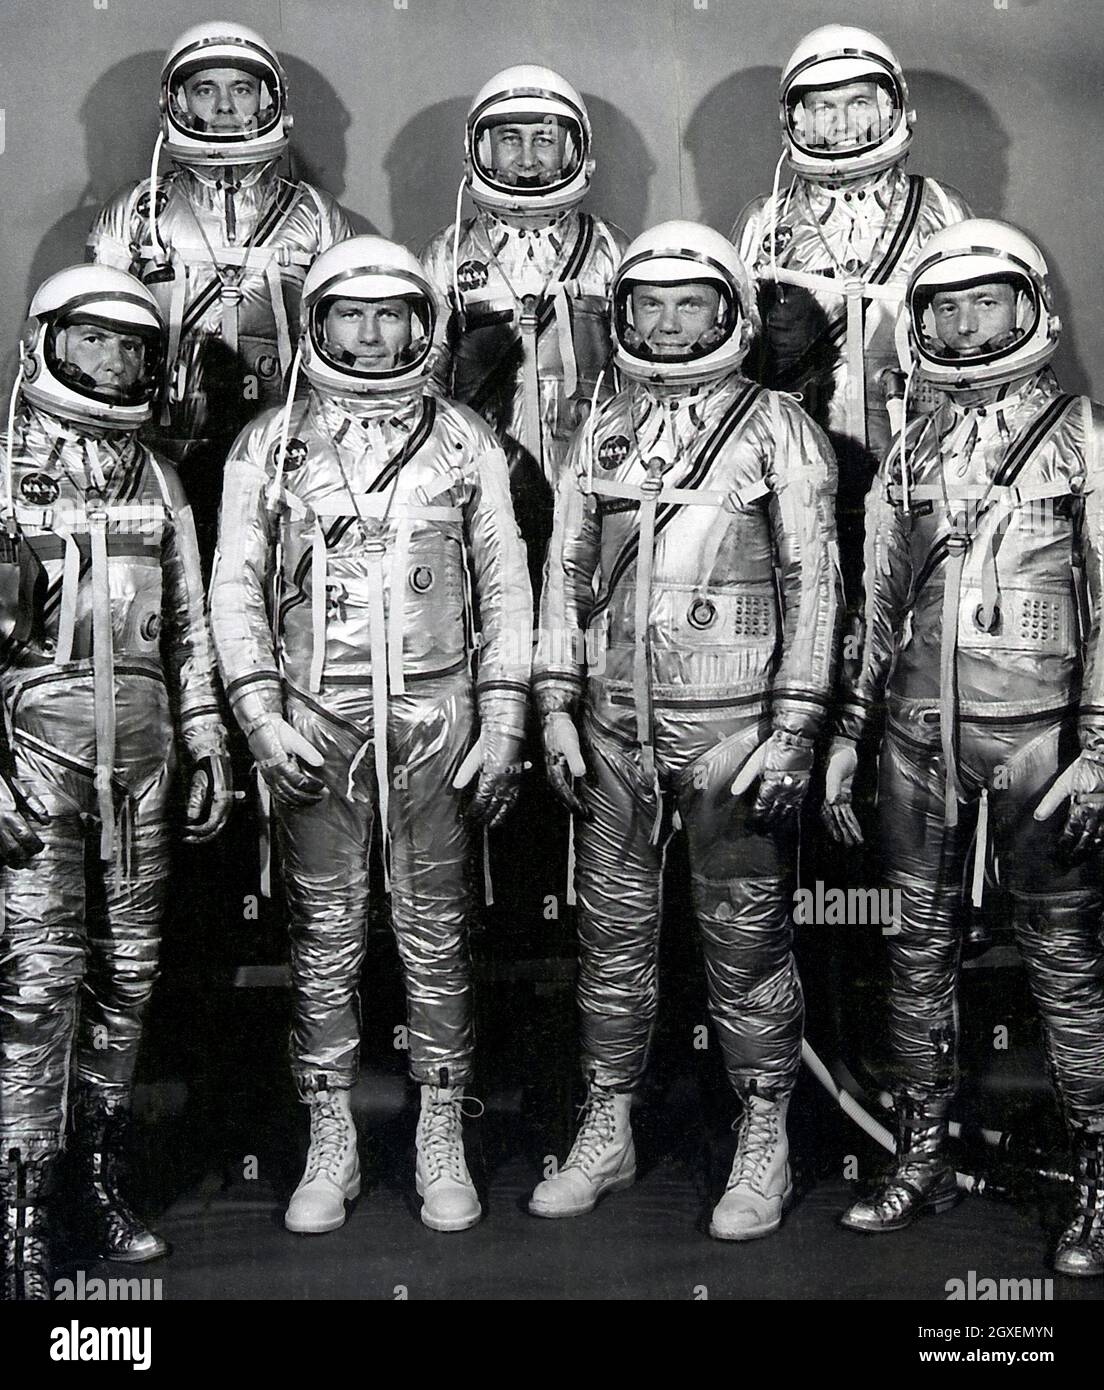 Gruppenportrait der Original Seven Astronauts für das Mercury-Projekt: (L bis R) Schirra, Walter-M; Slayton, Donald : Glenn, John-W; Zimmermann, Scott. Shepard, Alan -B; Grissom, Virgil-L: Cooper, L-Gordon Stockfoto